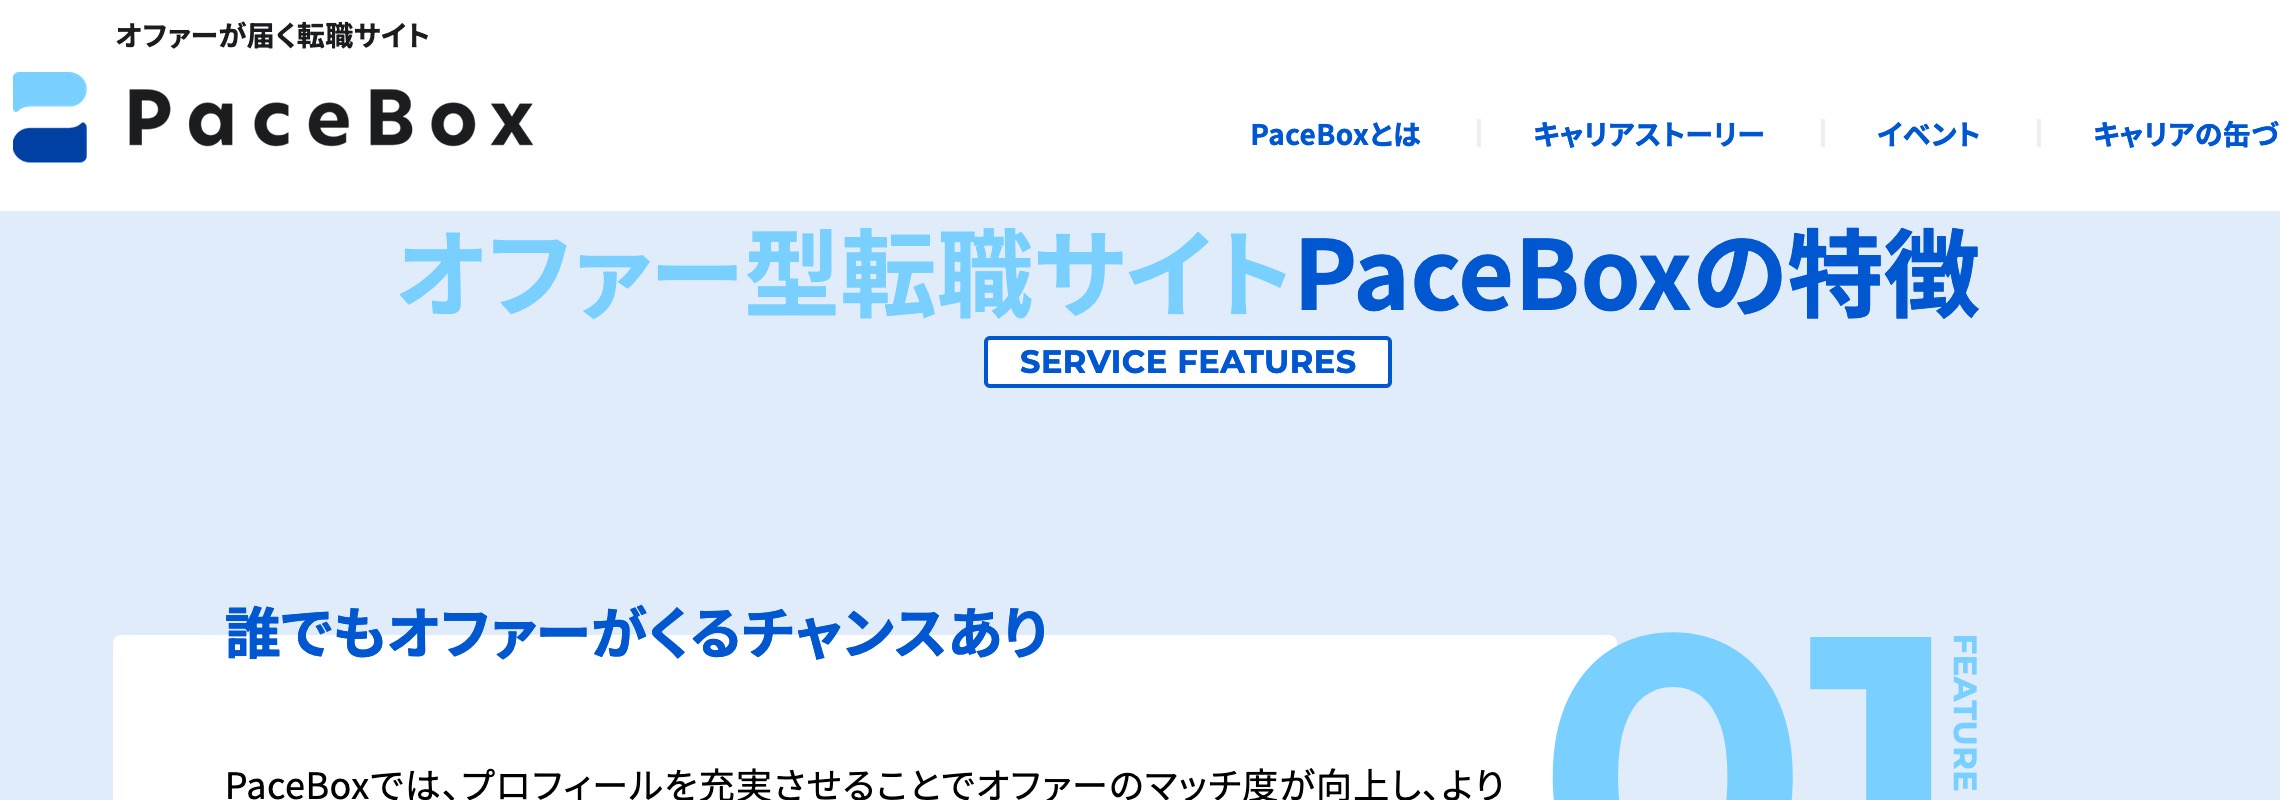 転職サイトPaceBox(ペースボックス)の公式ホームページ画像